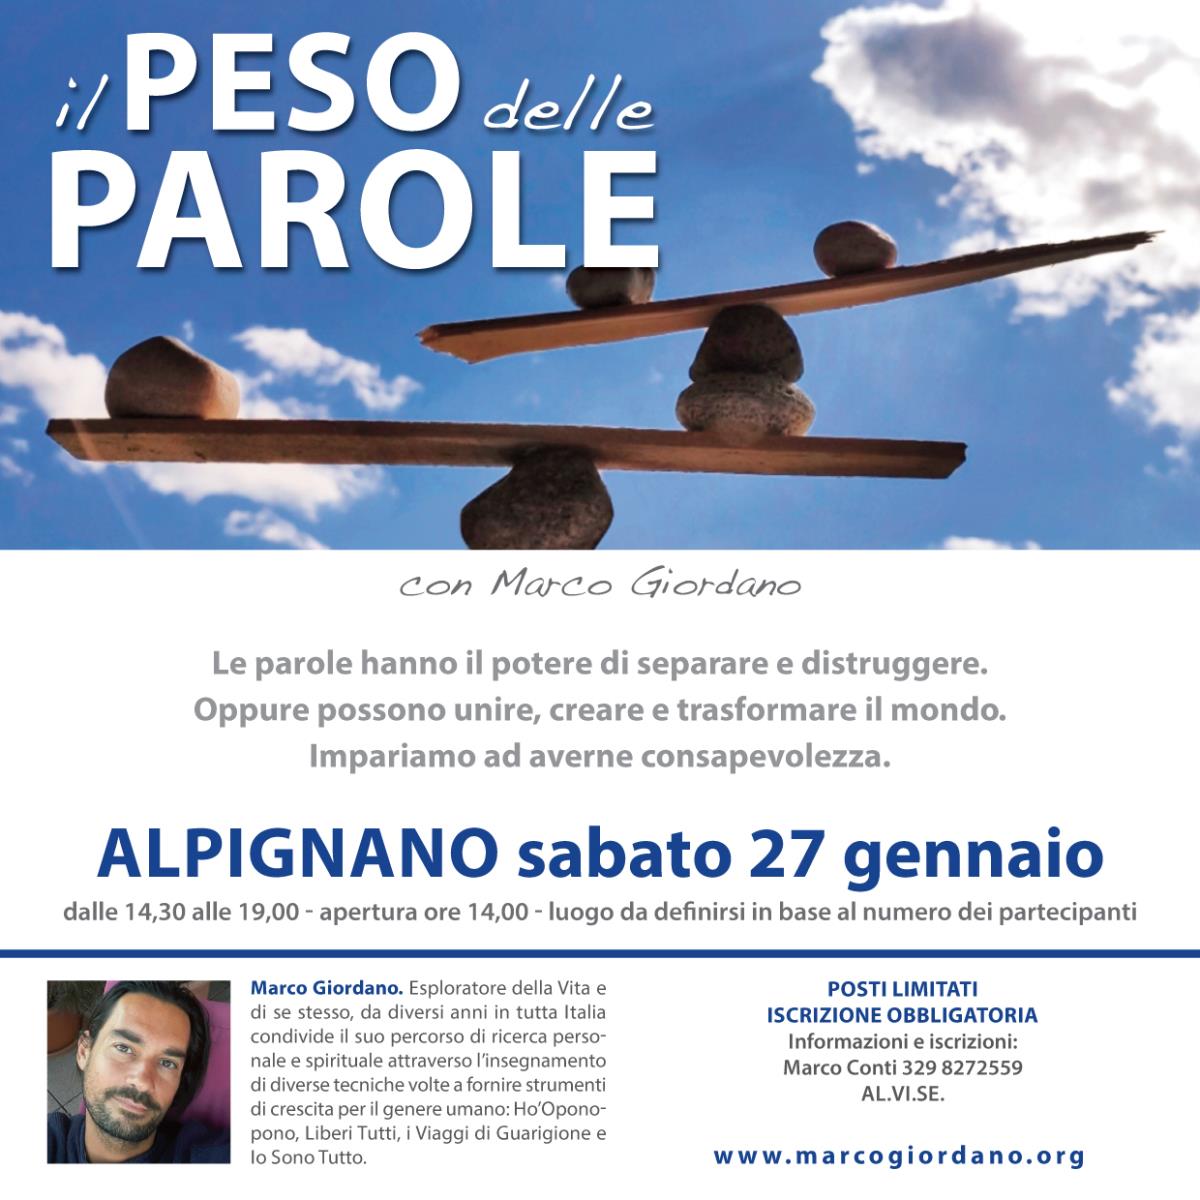 <b>IL PESO DELLE PAROLE</b> sabato 27 gennaio <b>ALPIGNANO (Torino)